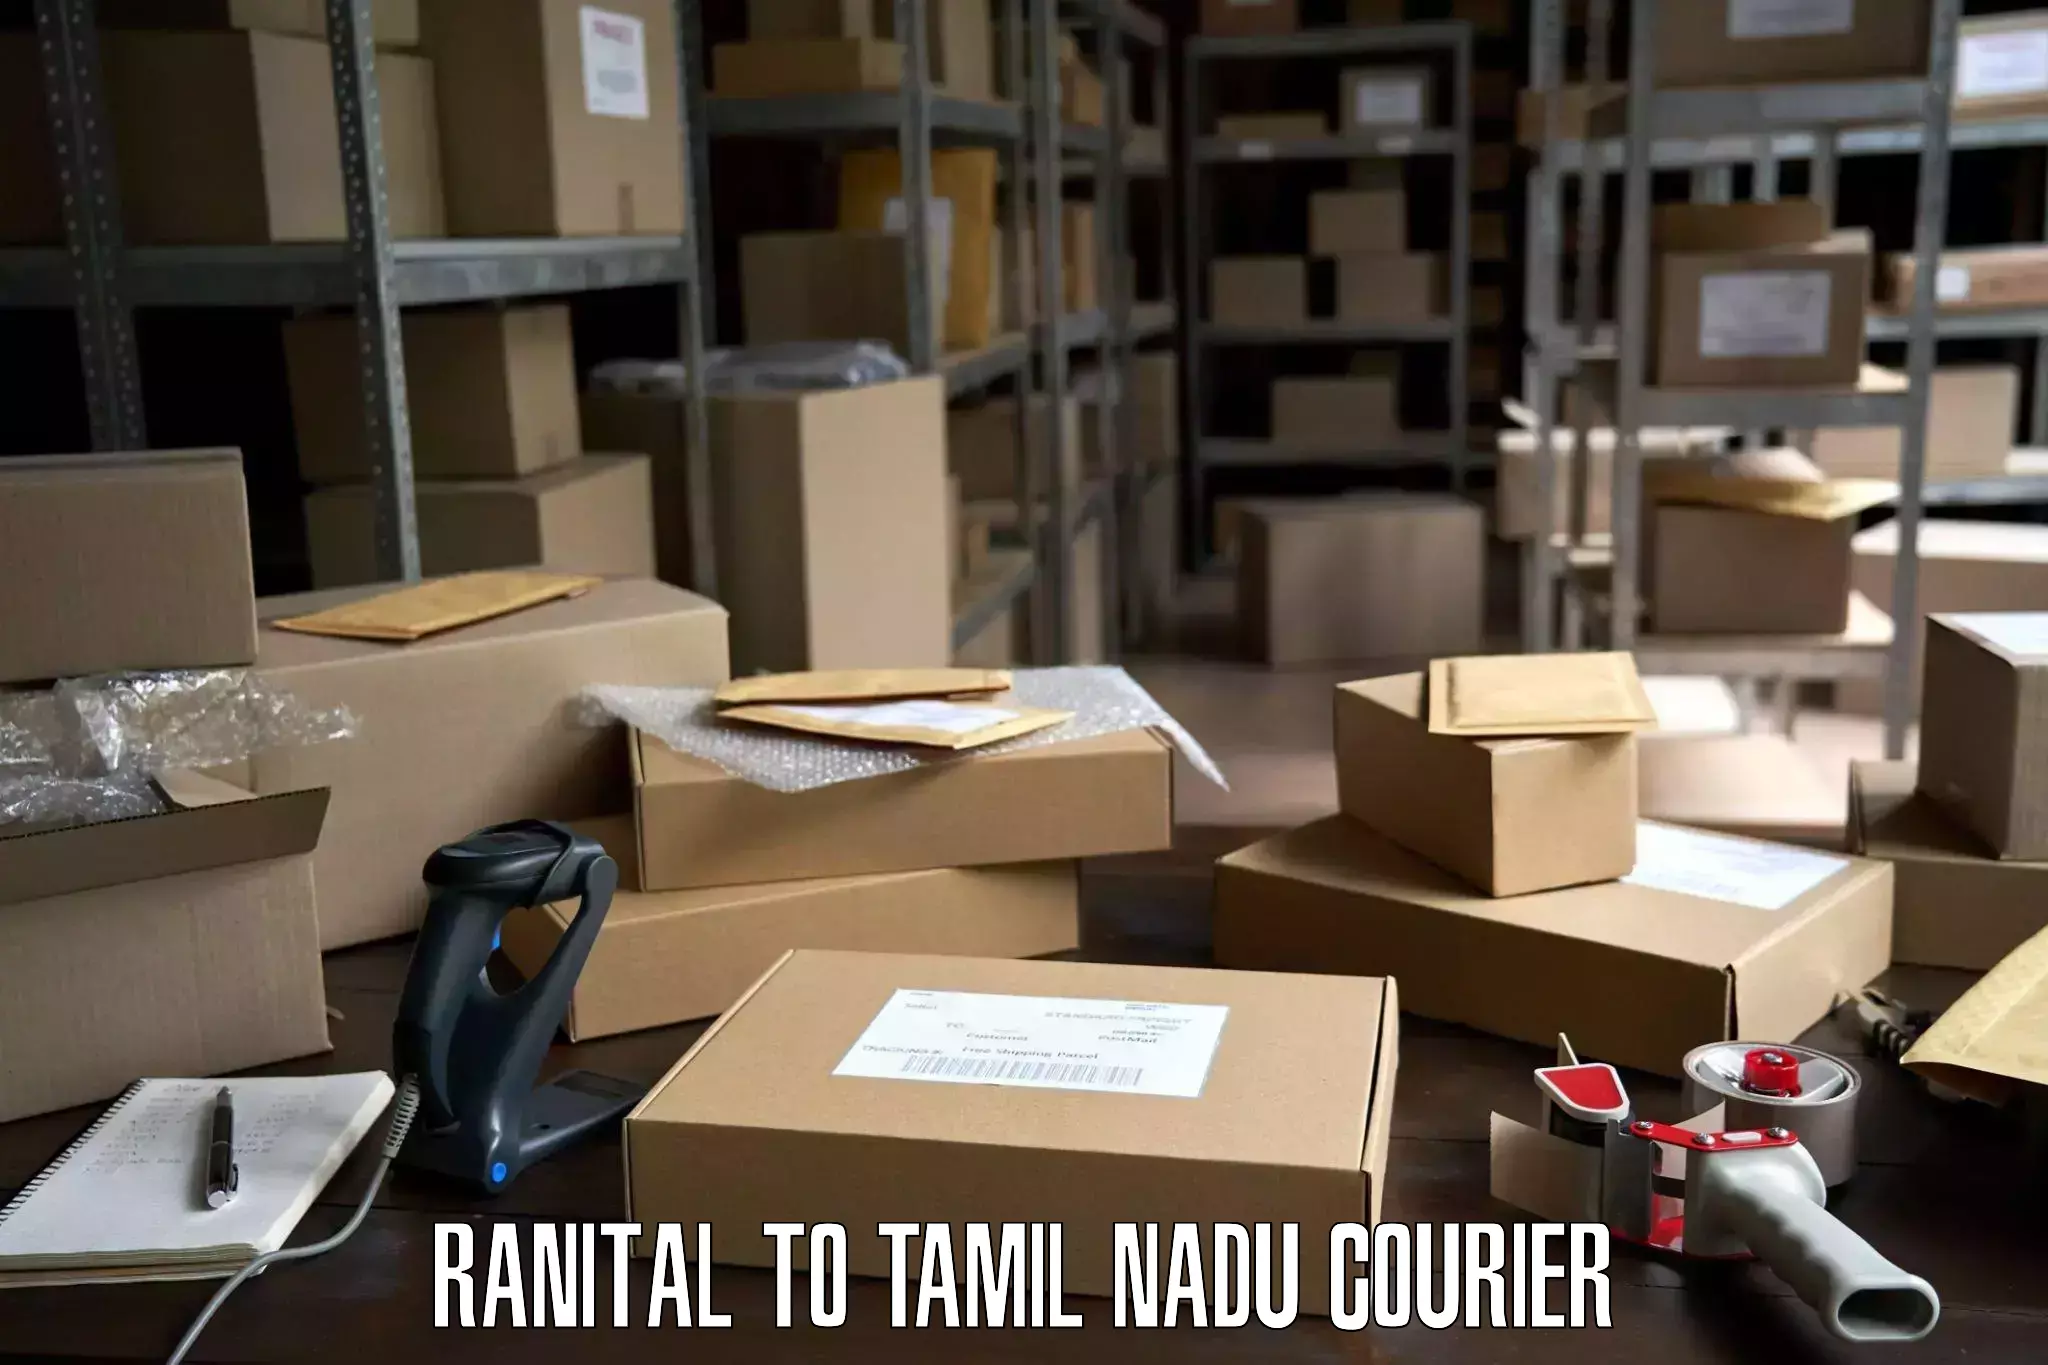 Efficient moving company Ranital to Surandai